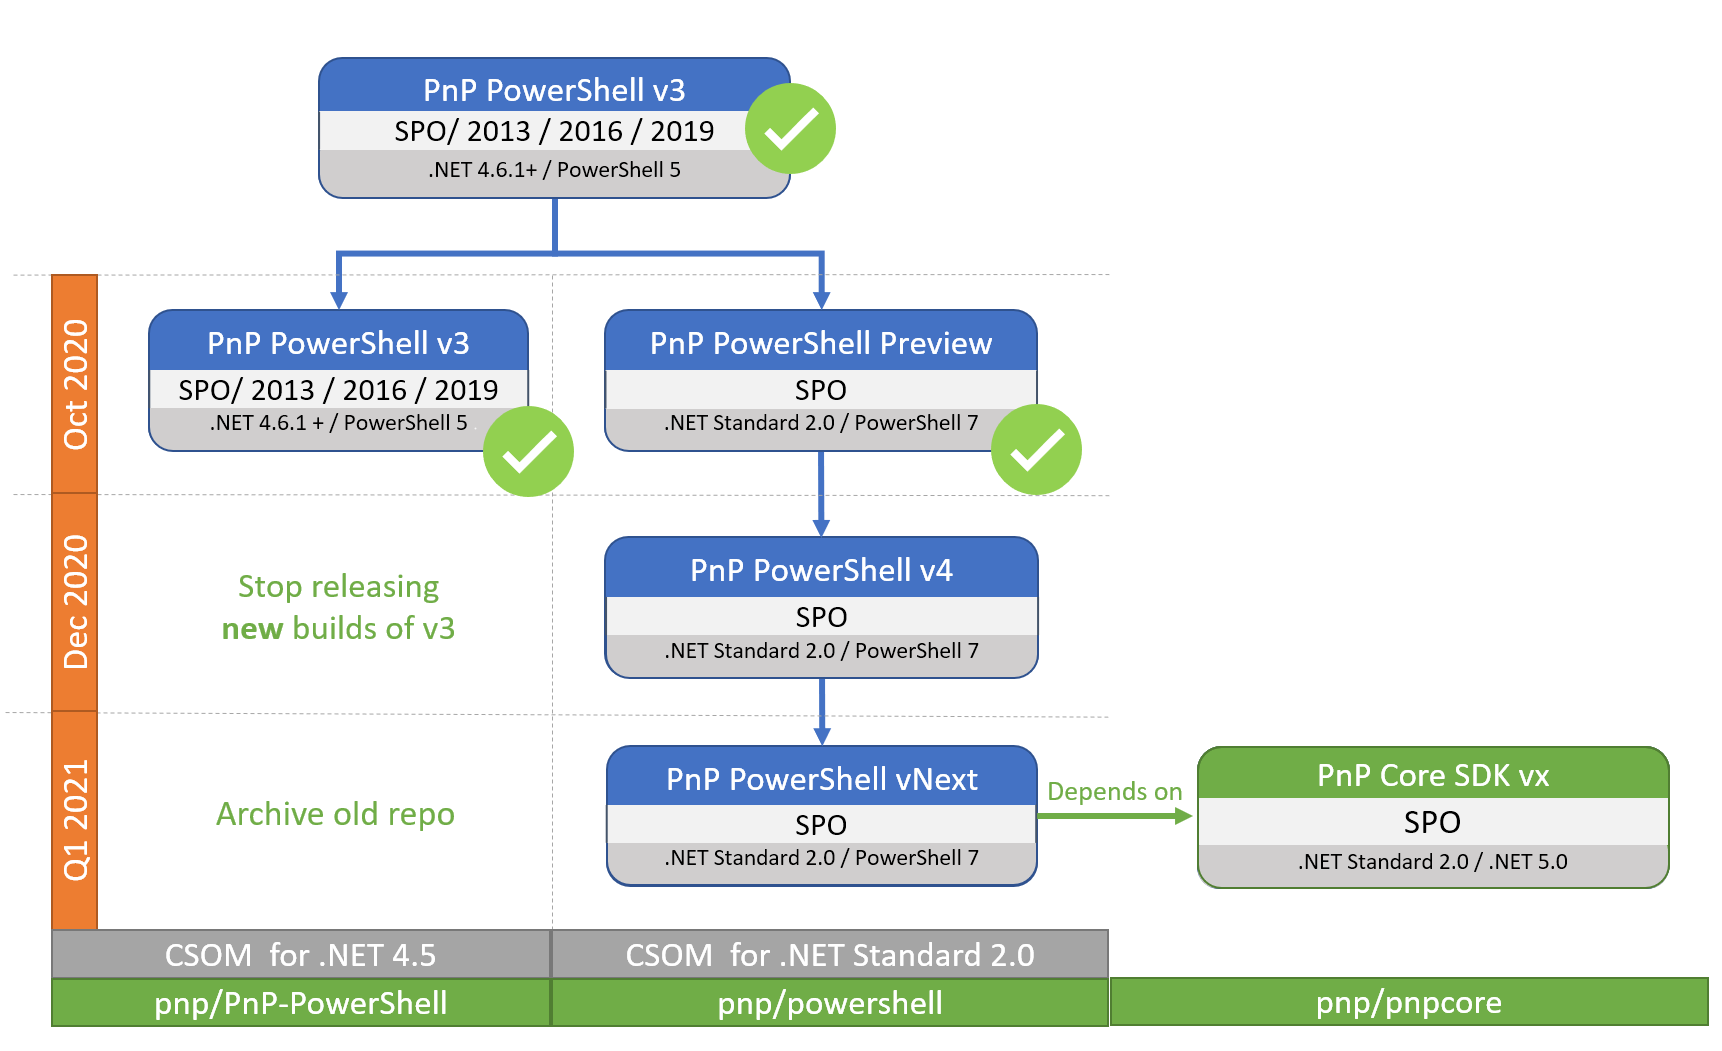 PnP PowerShell RoadMap